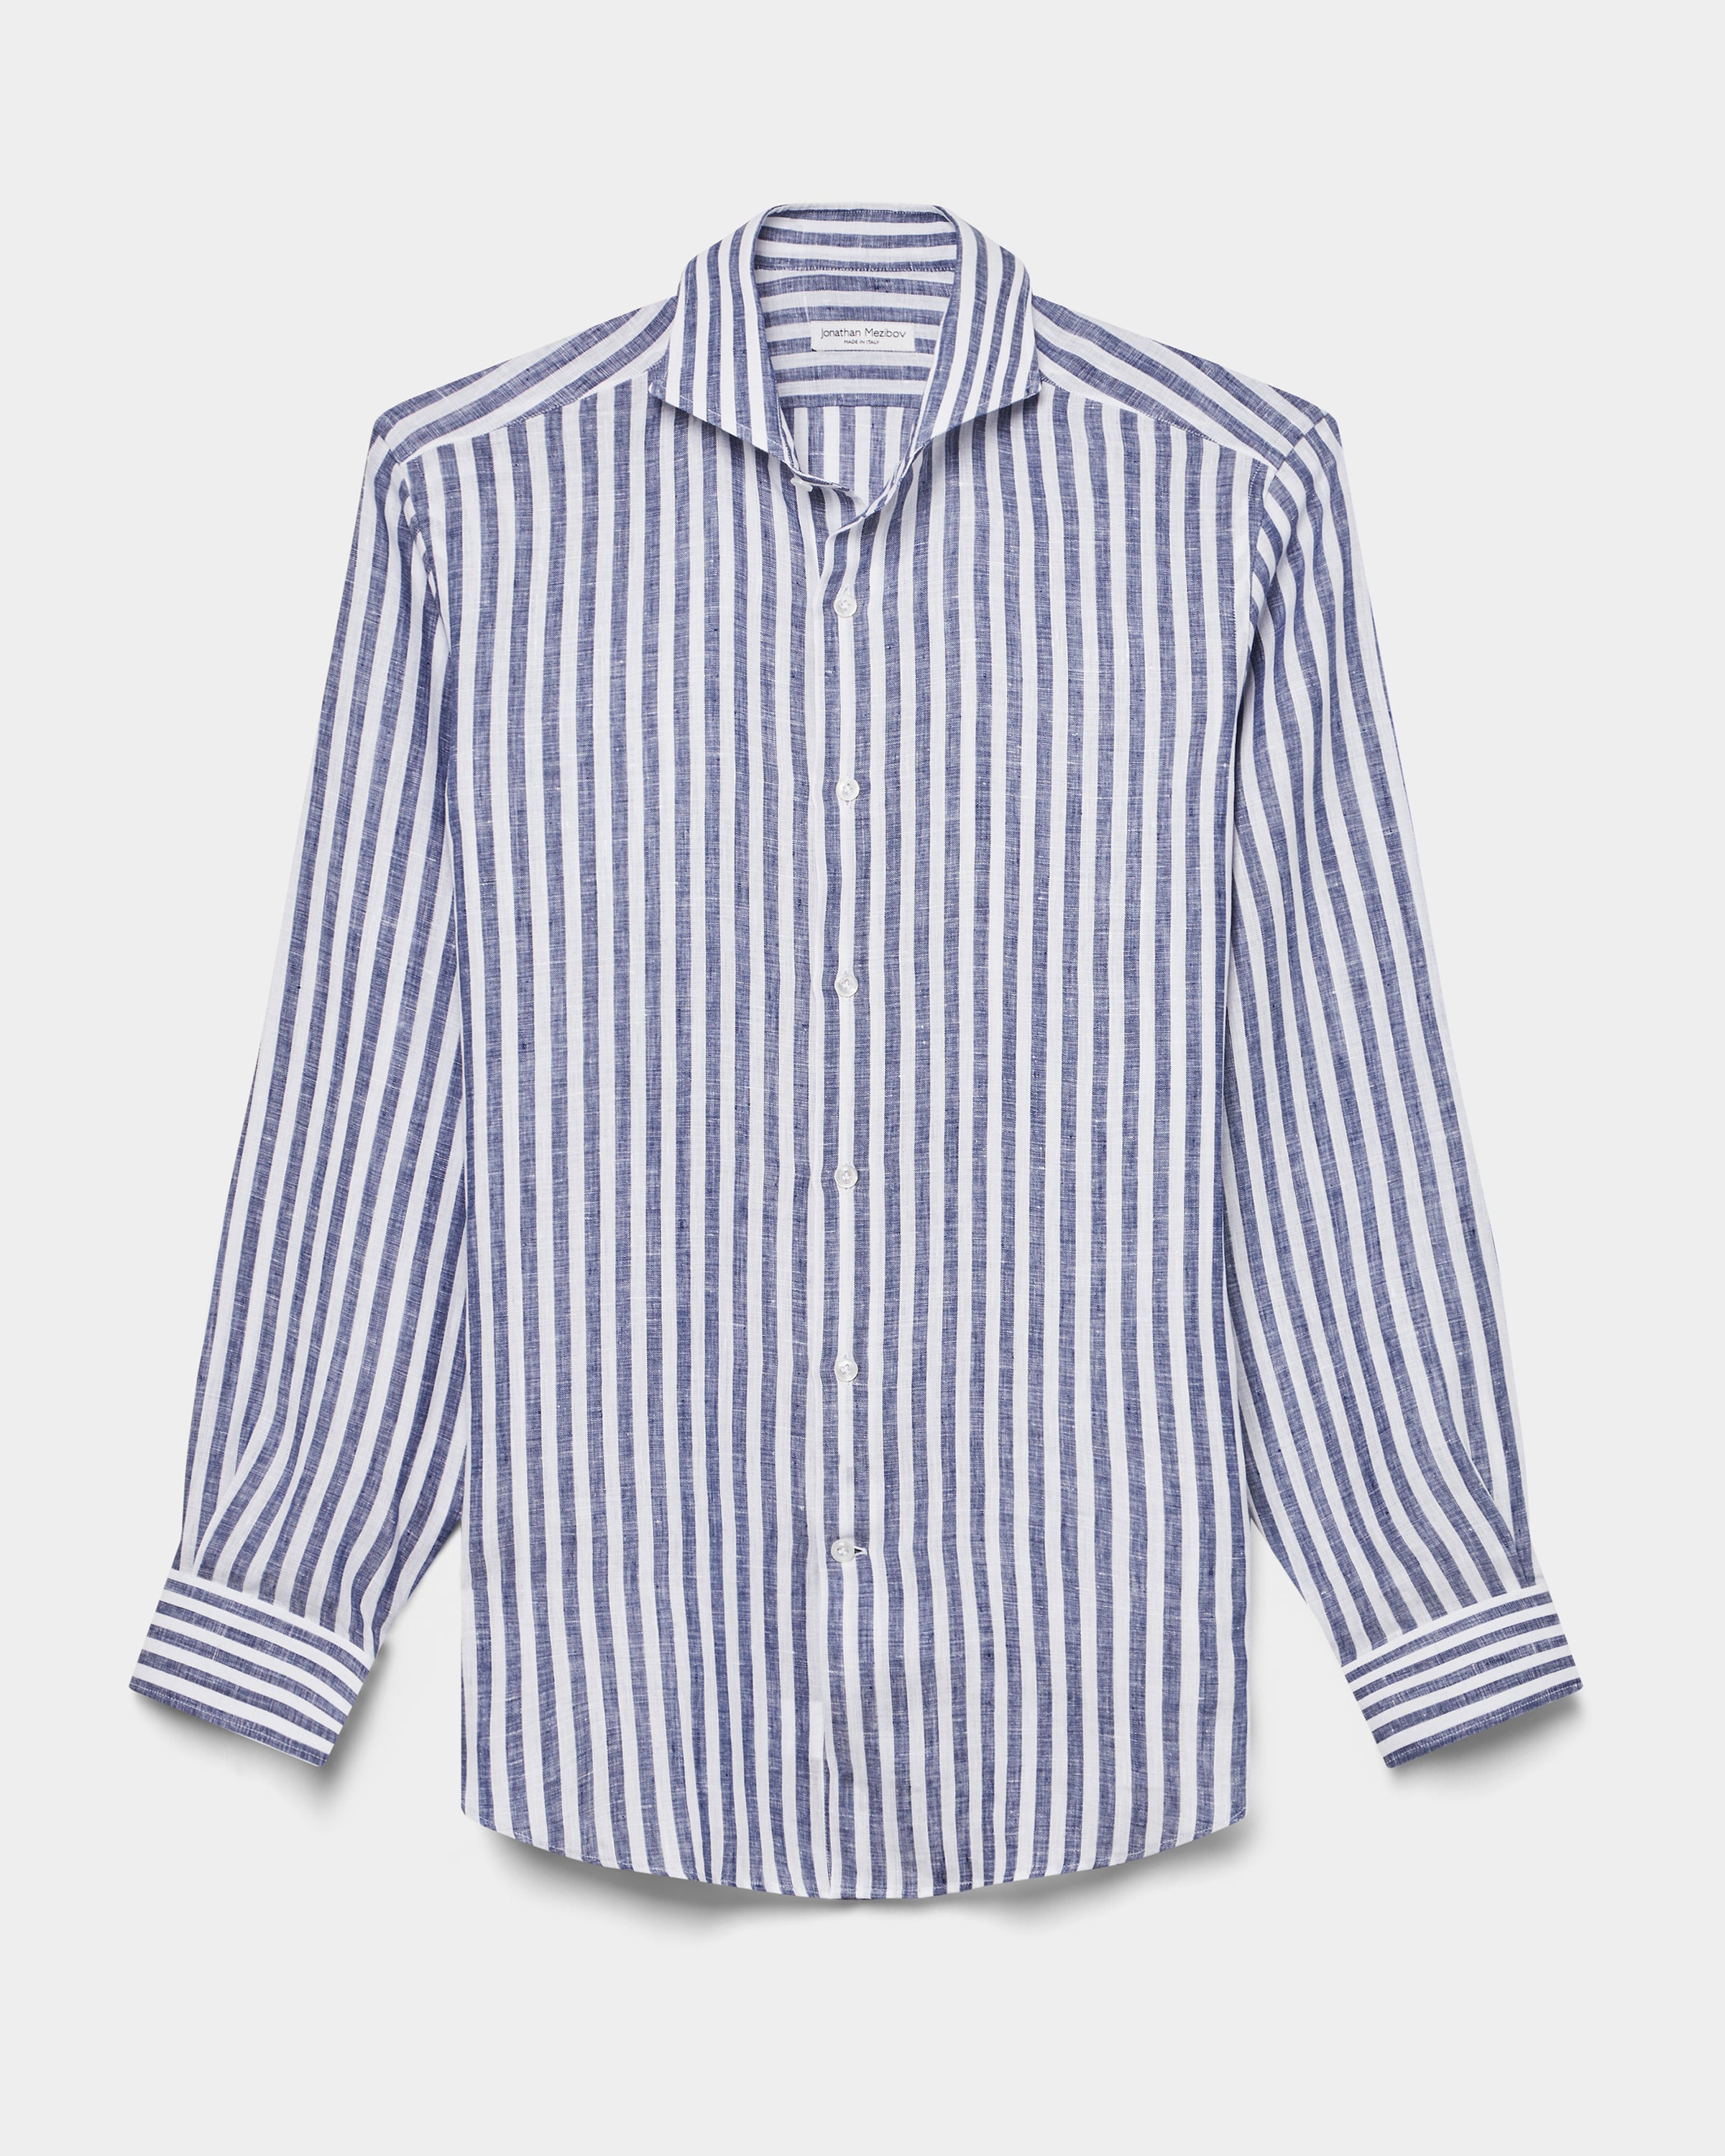 Pearson Linen Shirt - Preorder